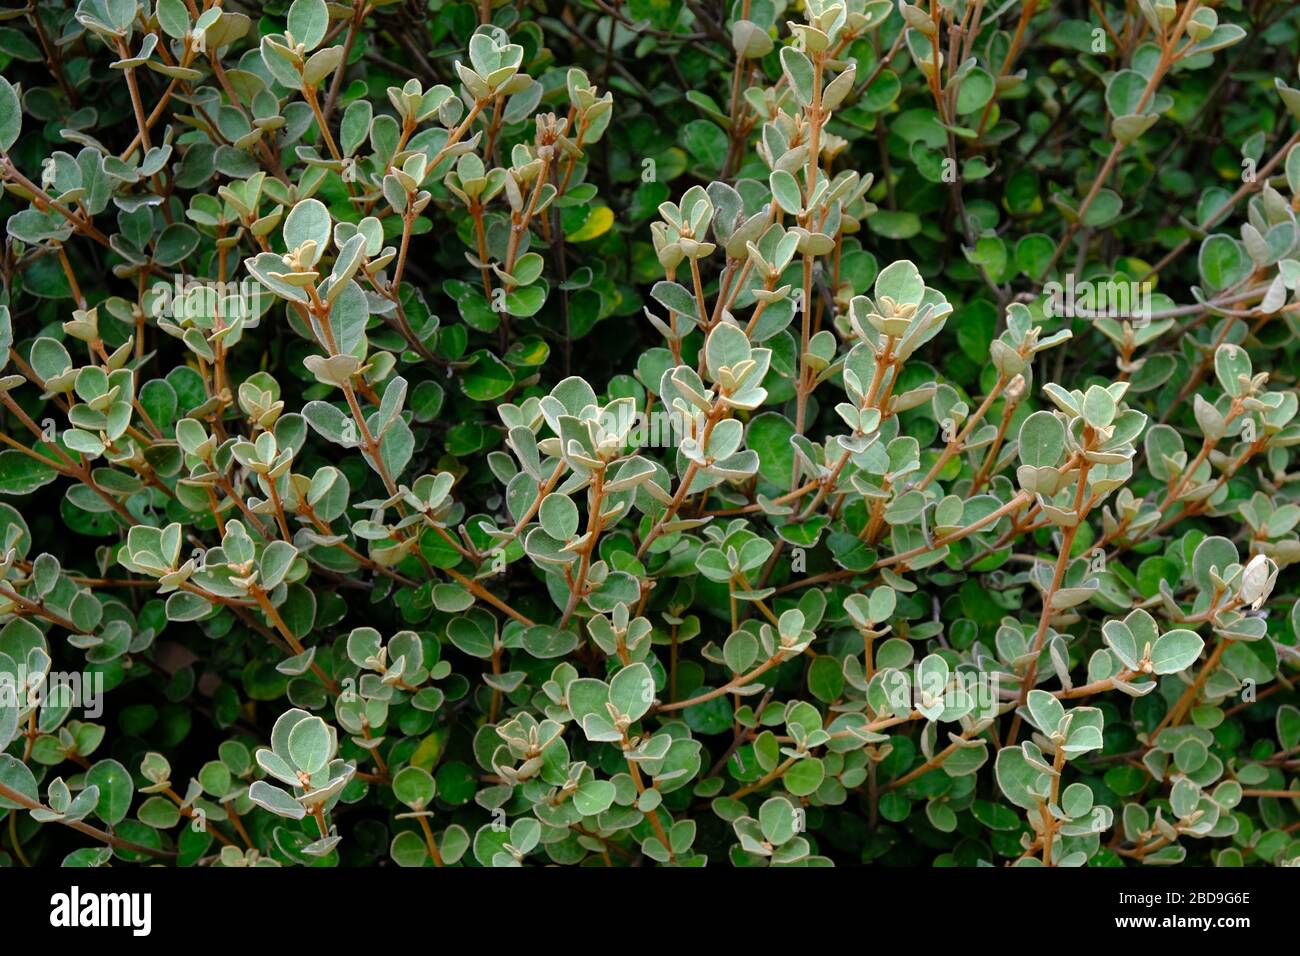 Correa alba foglie e rami primo piano. Una pianta australiana nativa. Foto Stock